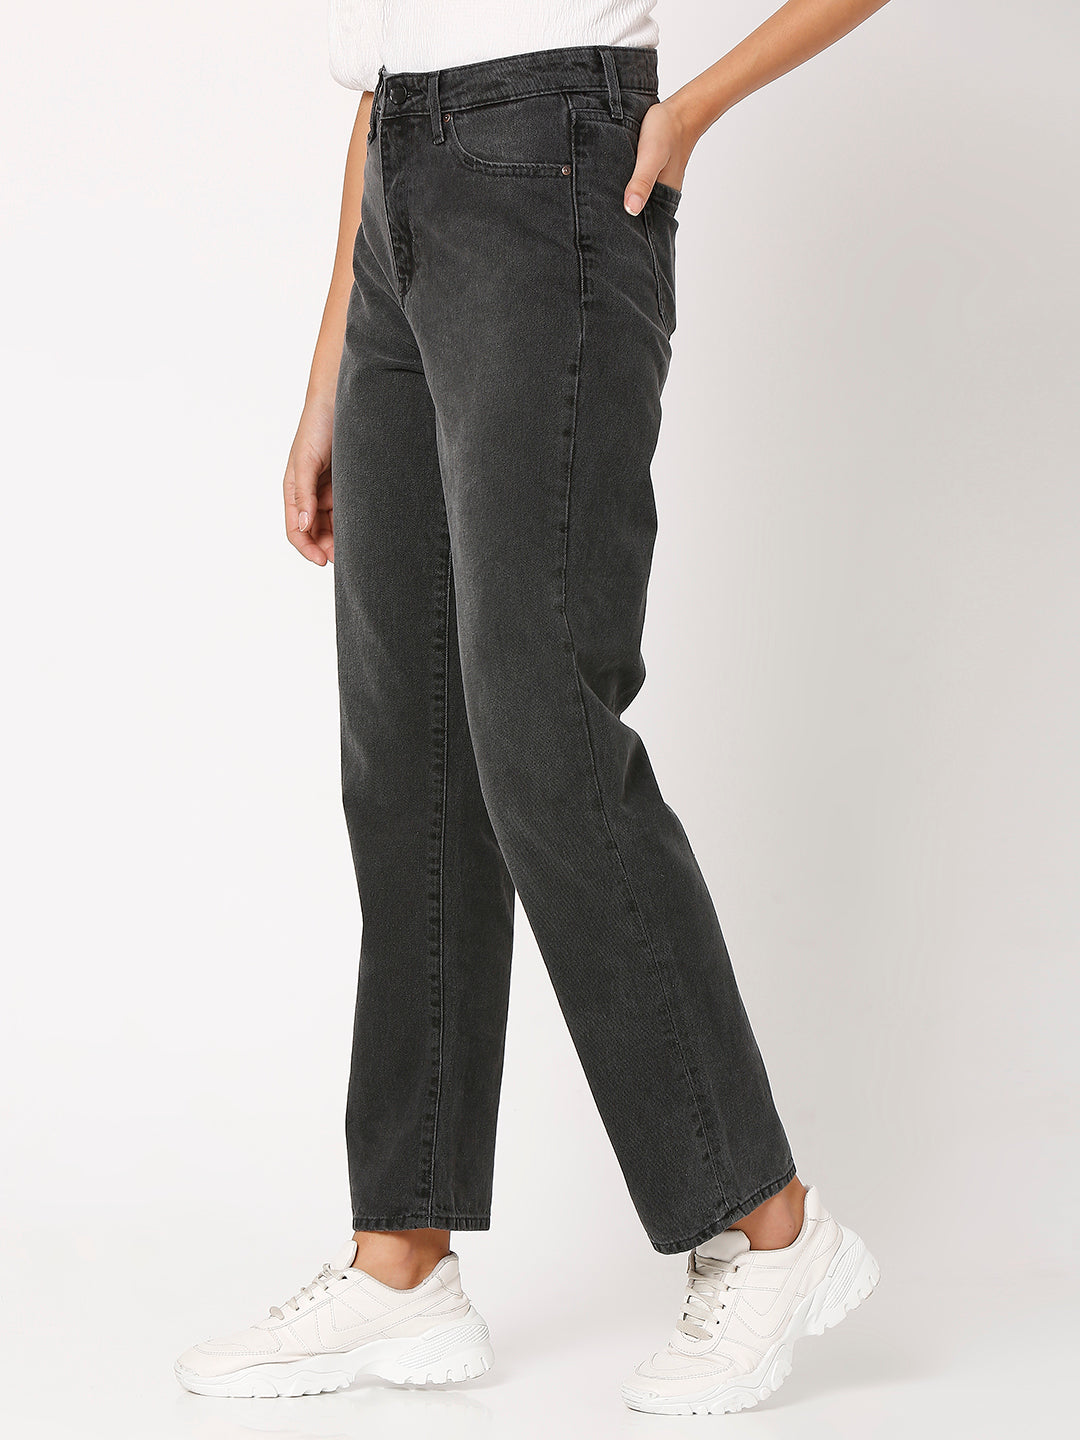 Spykar Black Straight Fit Regular Length Jeans For Women (Bella)